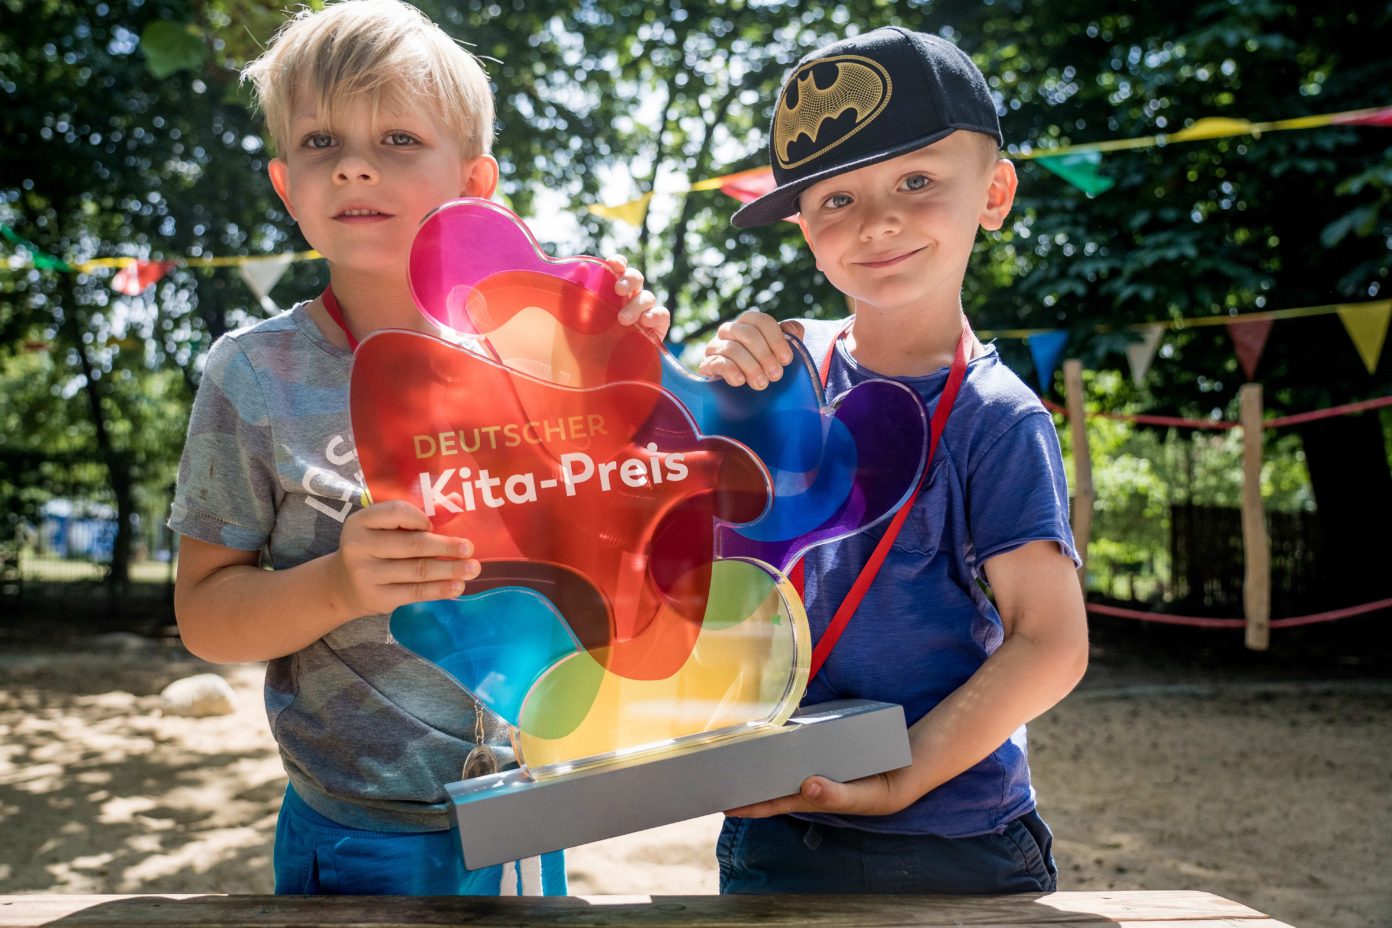 Zwei Kinder halten die Trophäe des Kita-Preises